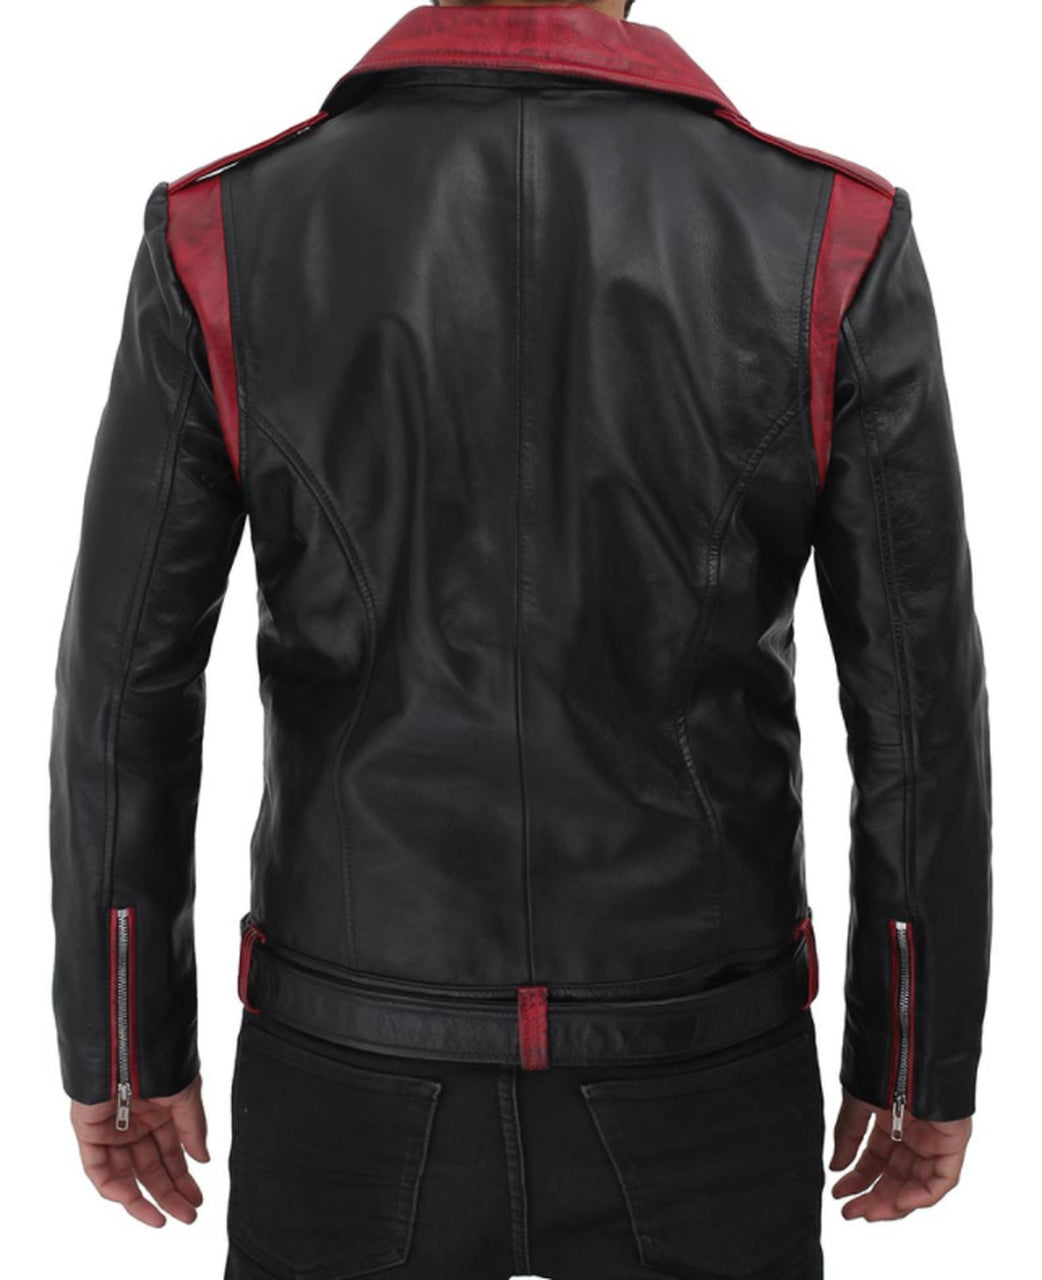 Men Designer Elegant Red Leather Biker Jacket